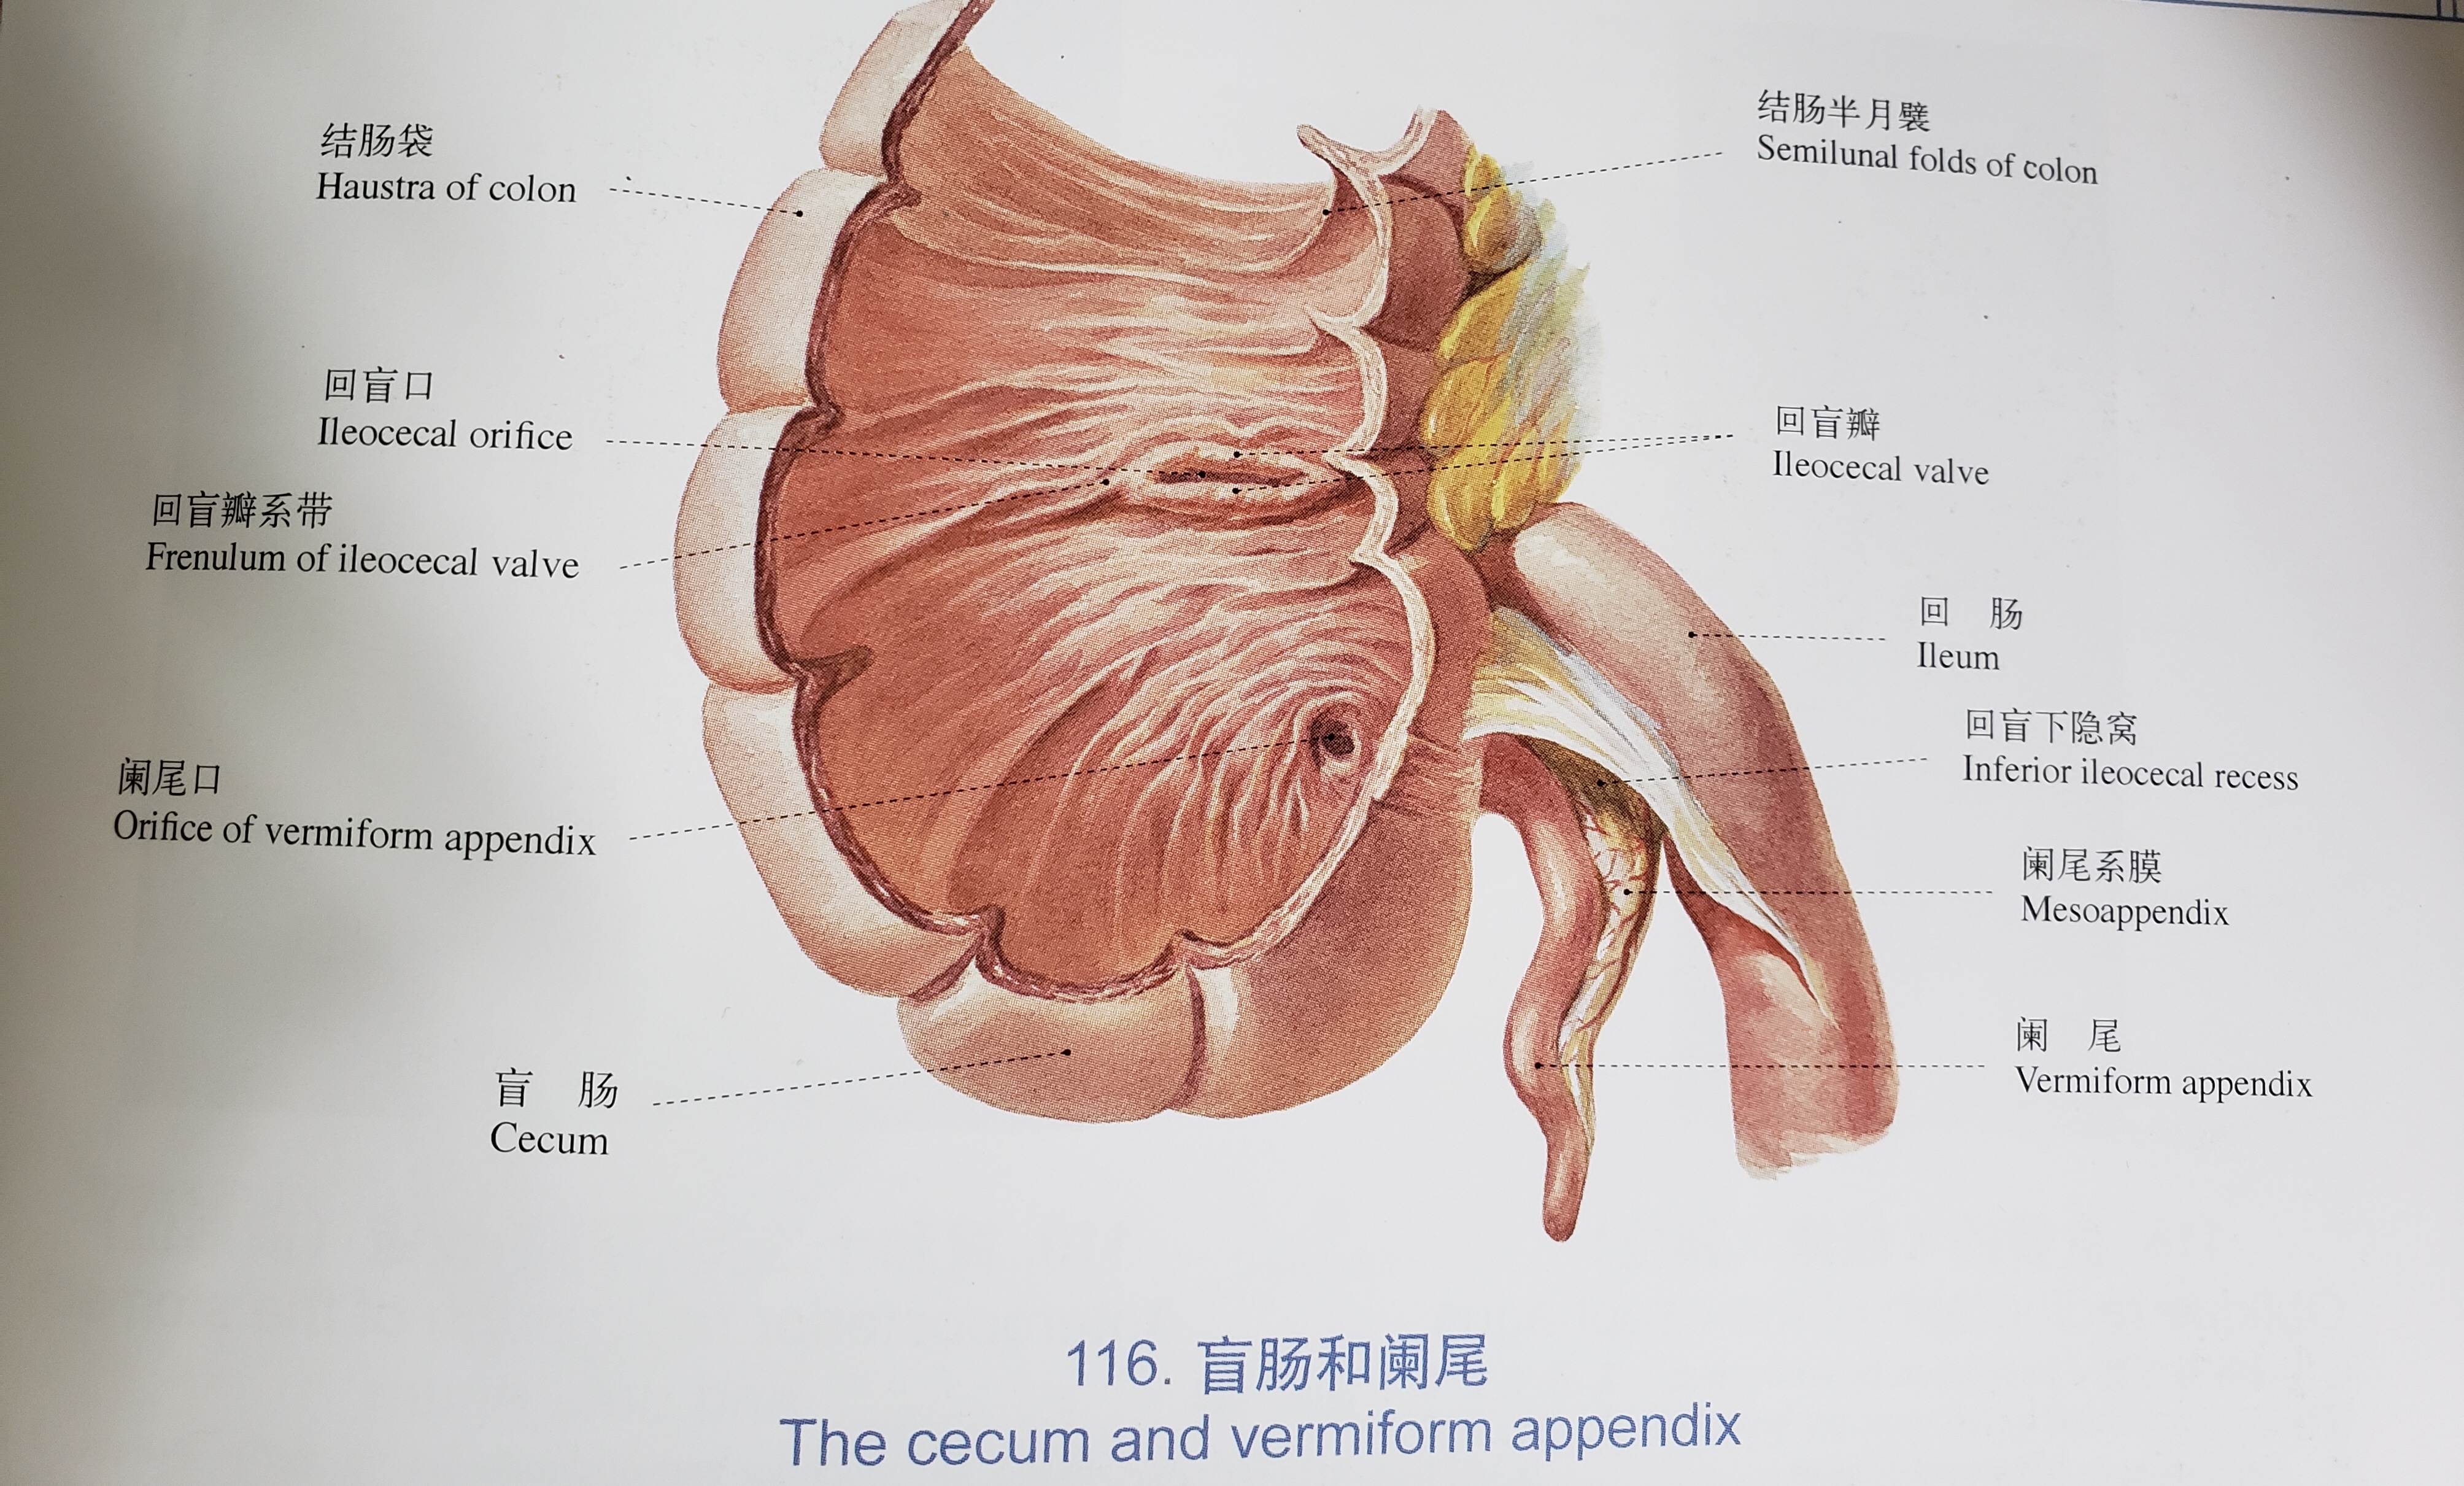 阑尾手术解剖结构图片